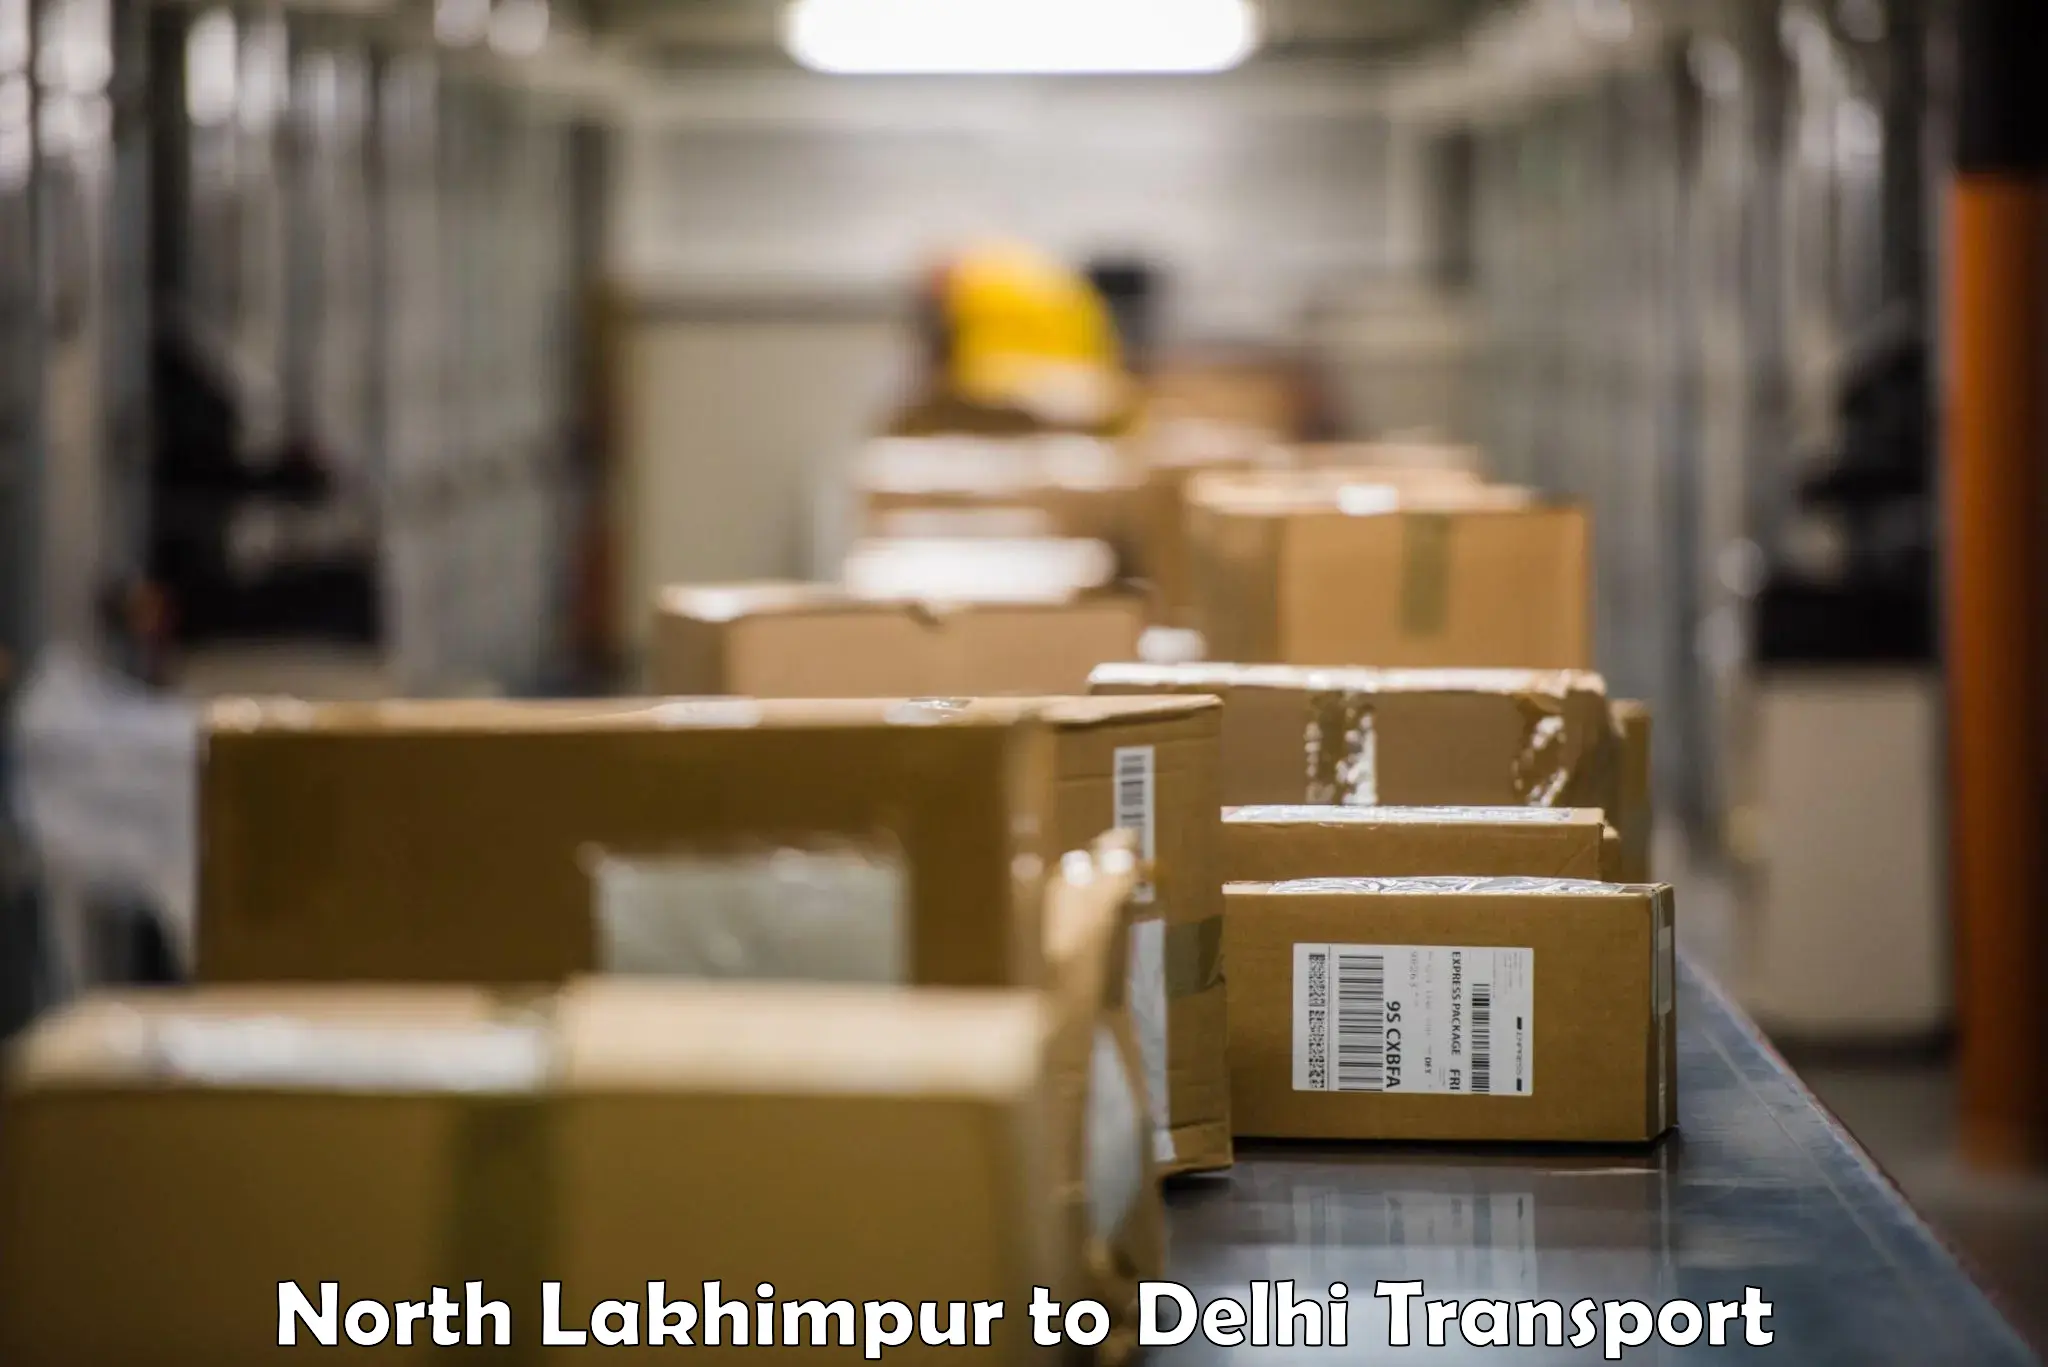 Furniture transport service North Lakhimpur to Krishna Nagar